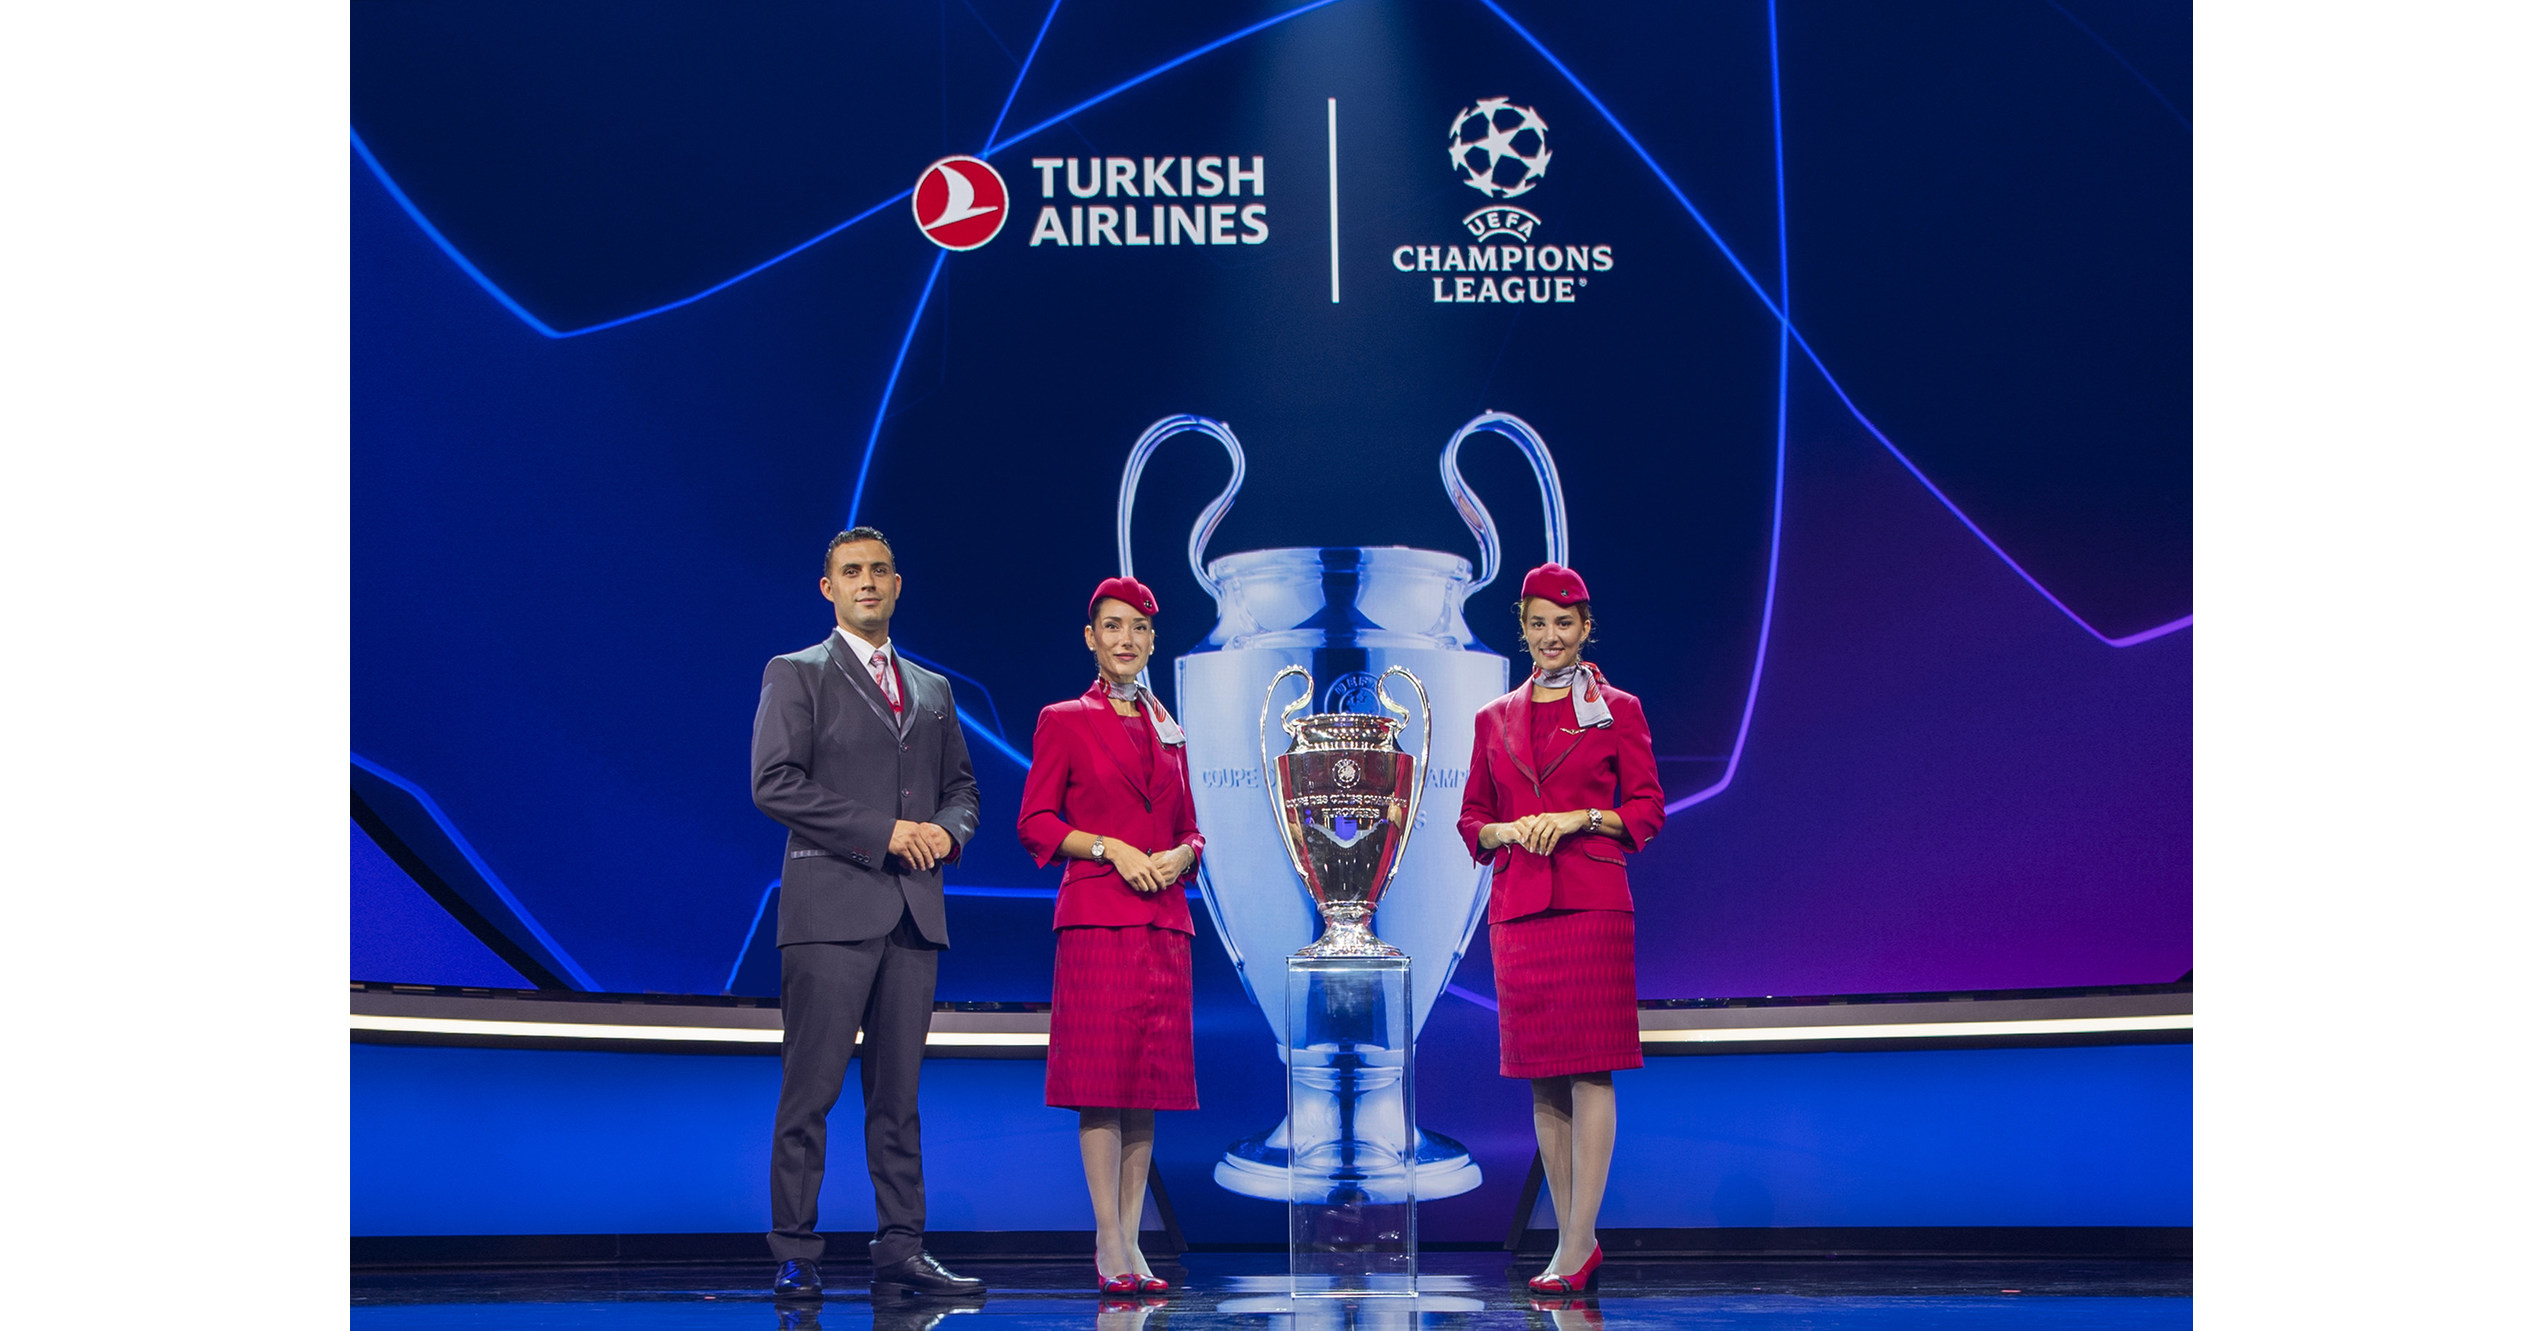 Turkish Airlines inaugura exposição sobre as finais da Champions